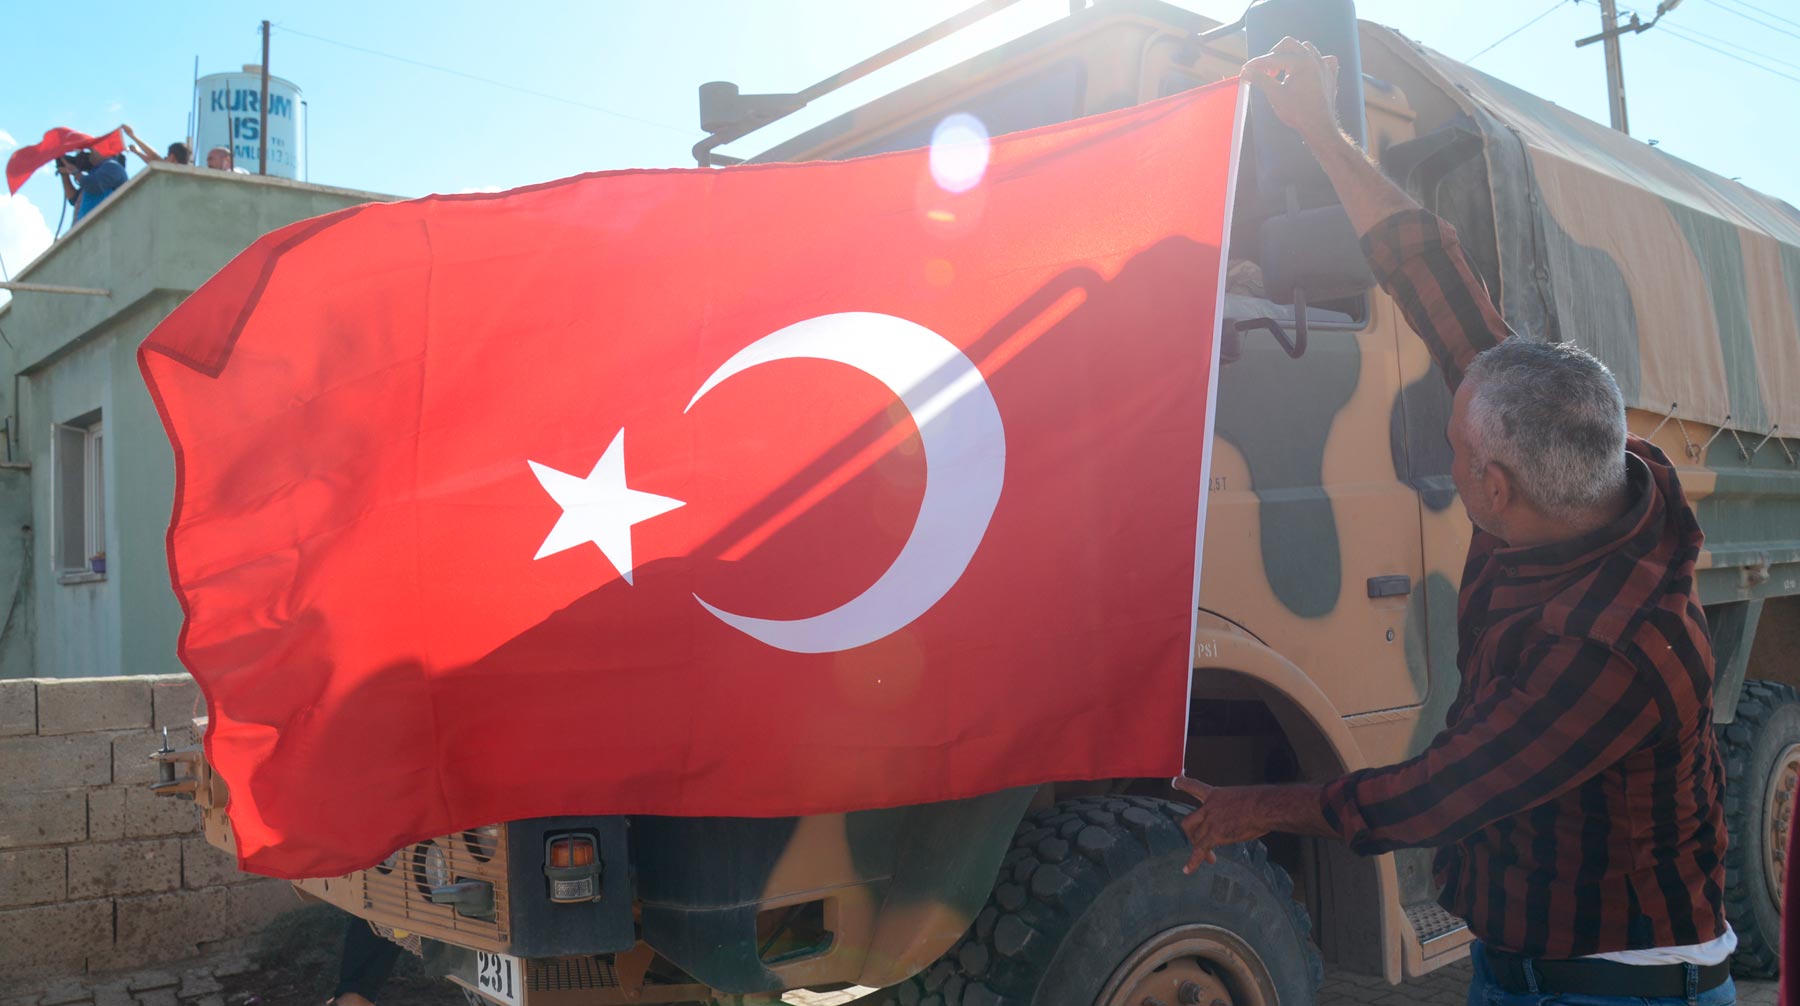 Анкара не выполняет свои обязательства по борьбе с боевиками в провинции, подчеркнули в ведомстве Фото: © Global Look Press / Depo Photos